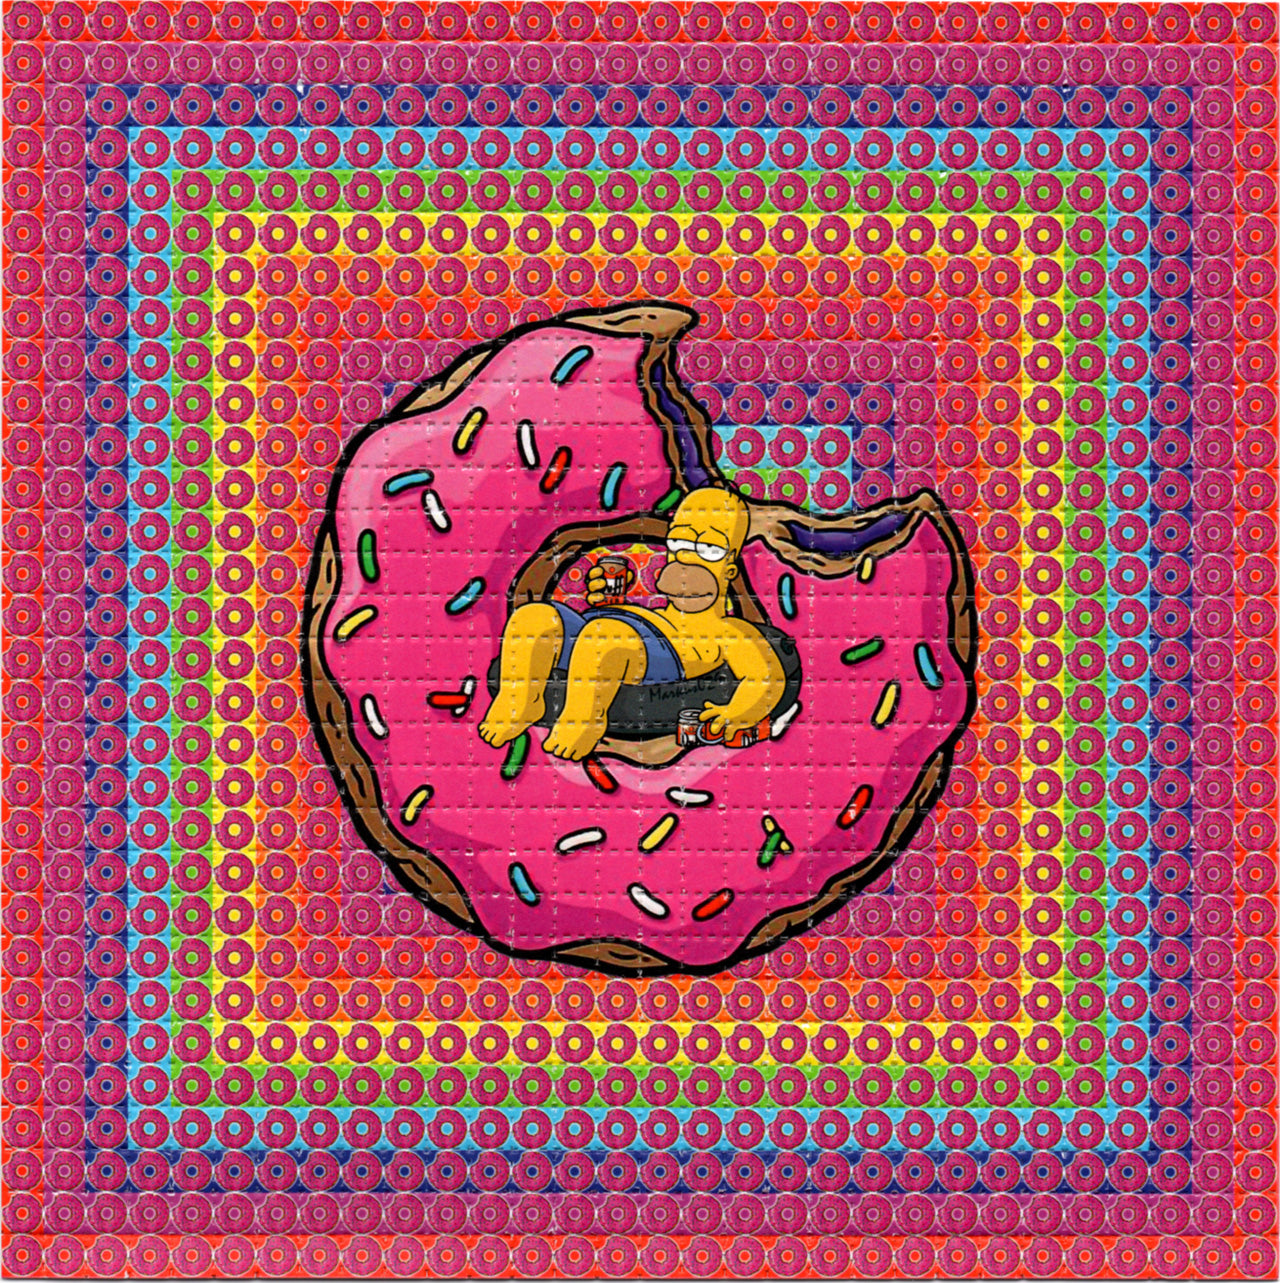 Swimming in Donuts LSD blotter art print